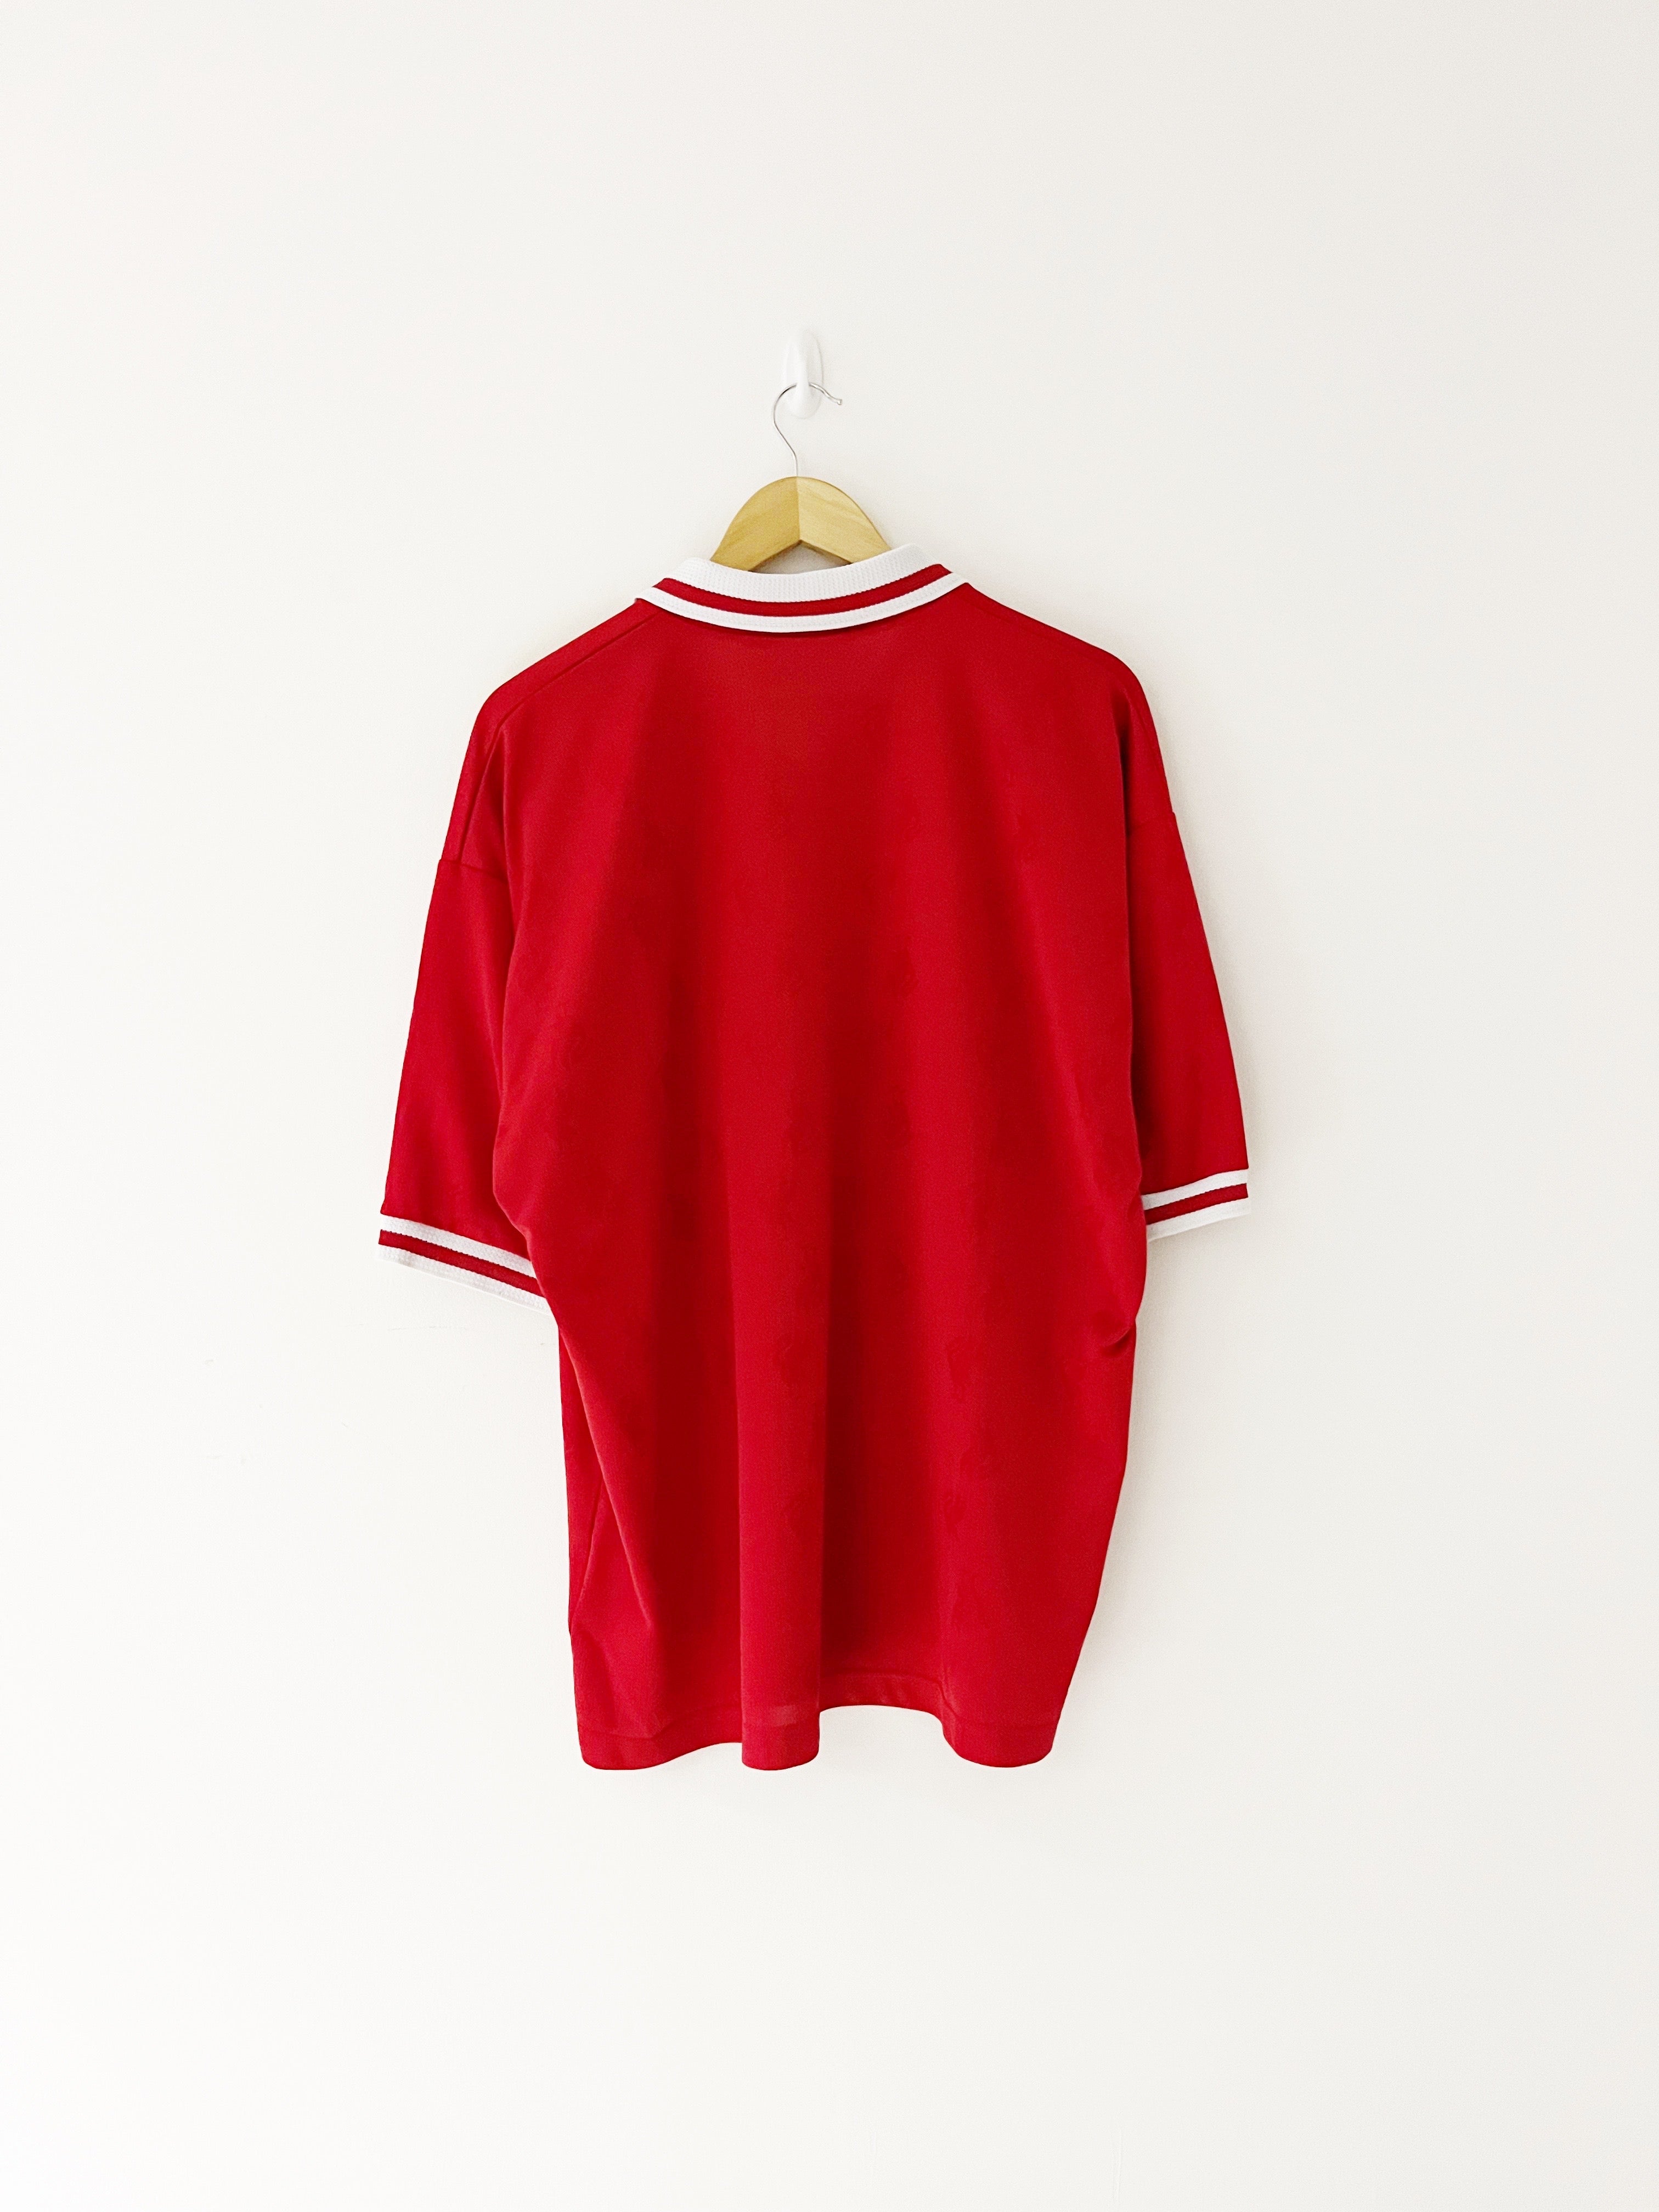 1996/98 Camiseta local del Liverpool (XL) 9/10